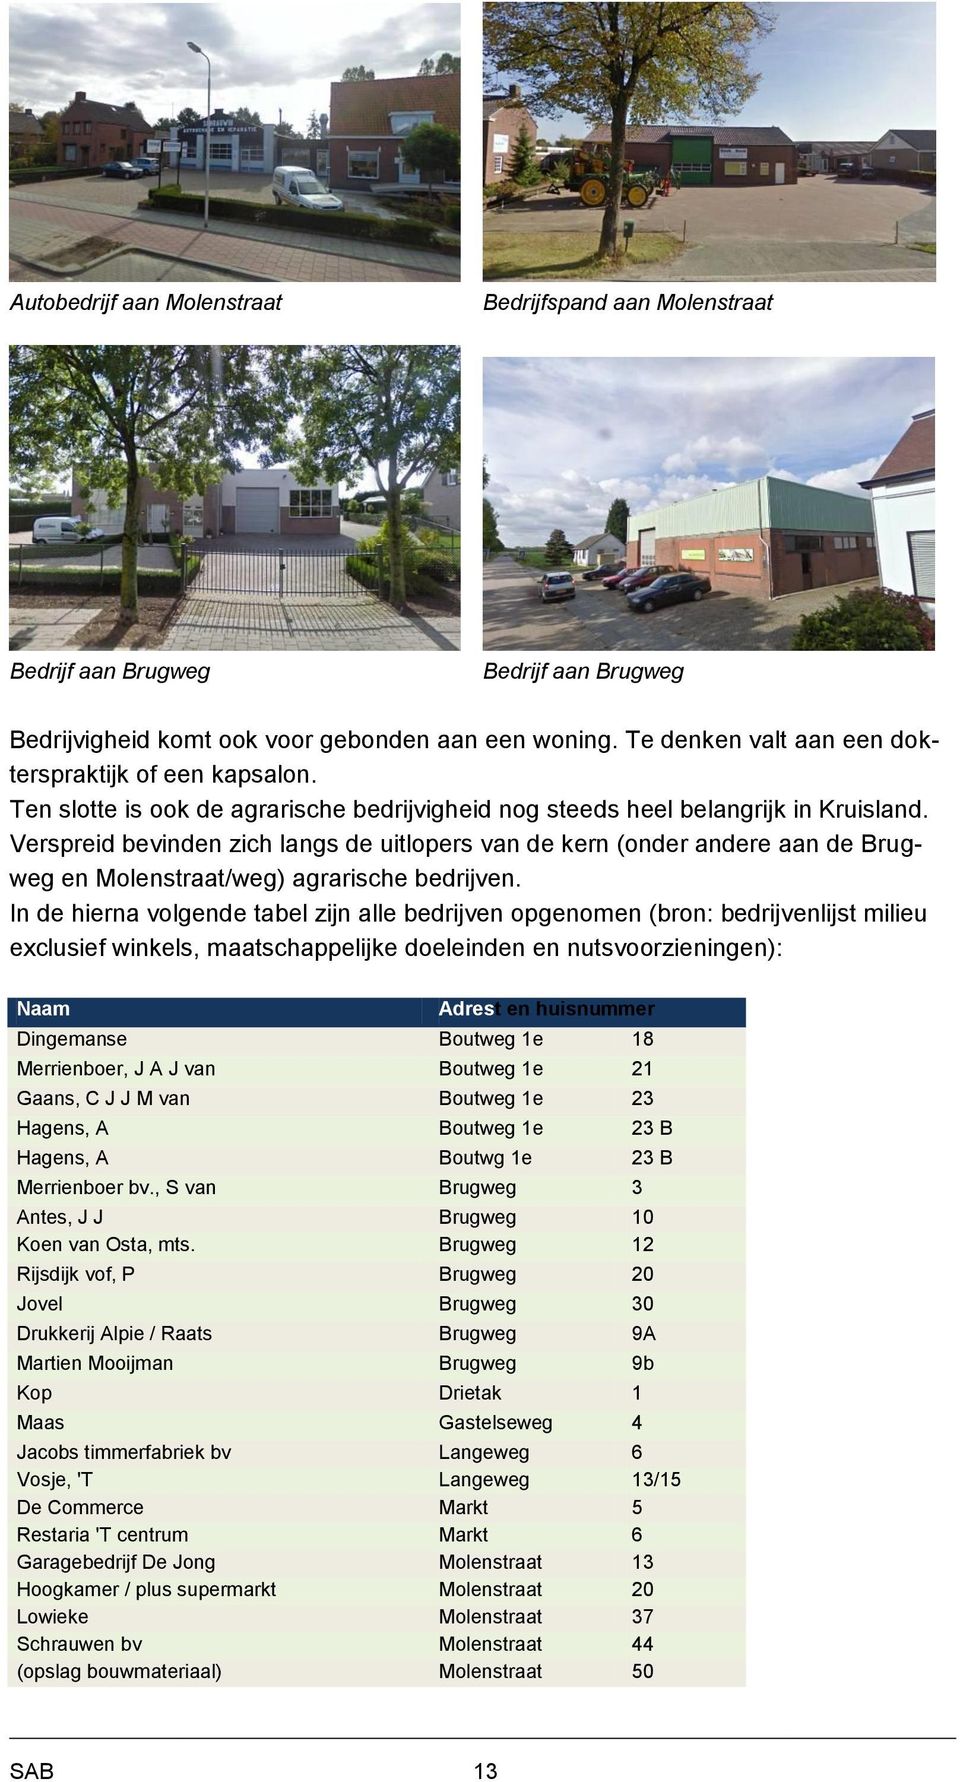 Verspreid bevinden zich langs de uitlopers van de kern (onder andere aan de Brugweg en Molenstraat/weg) agrarische bedrijven.